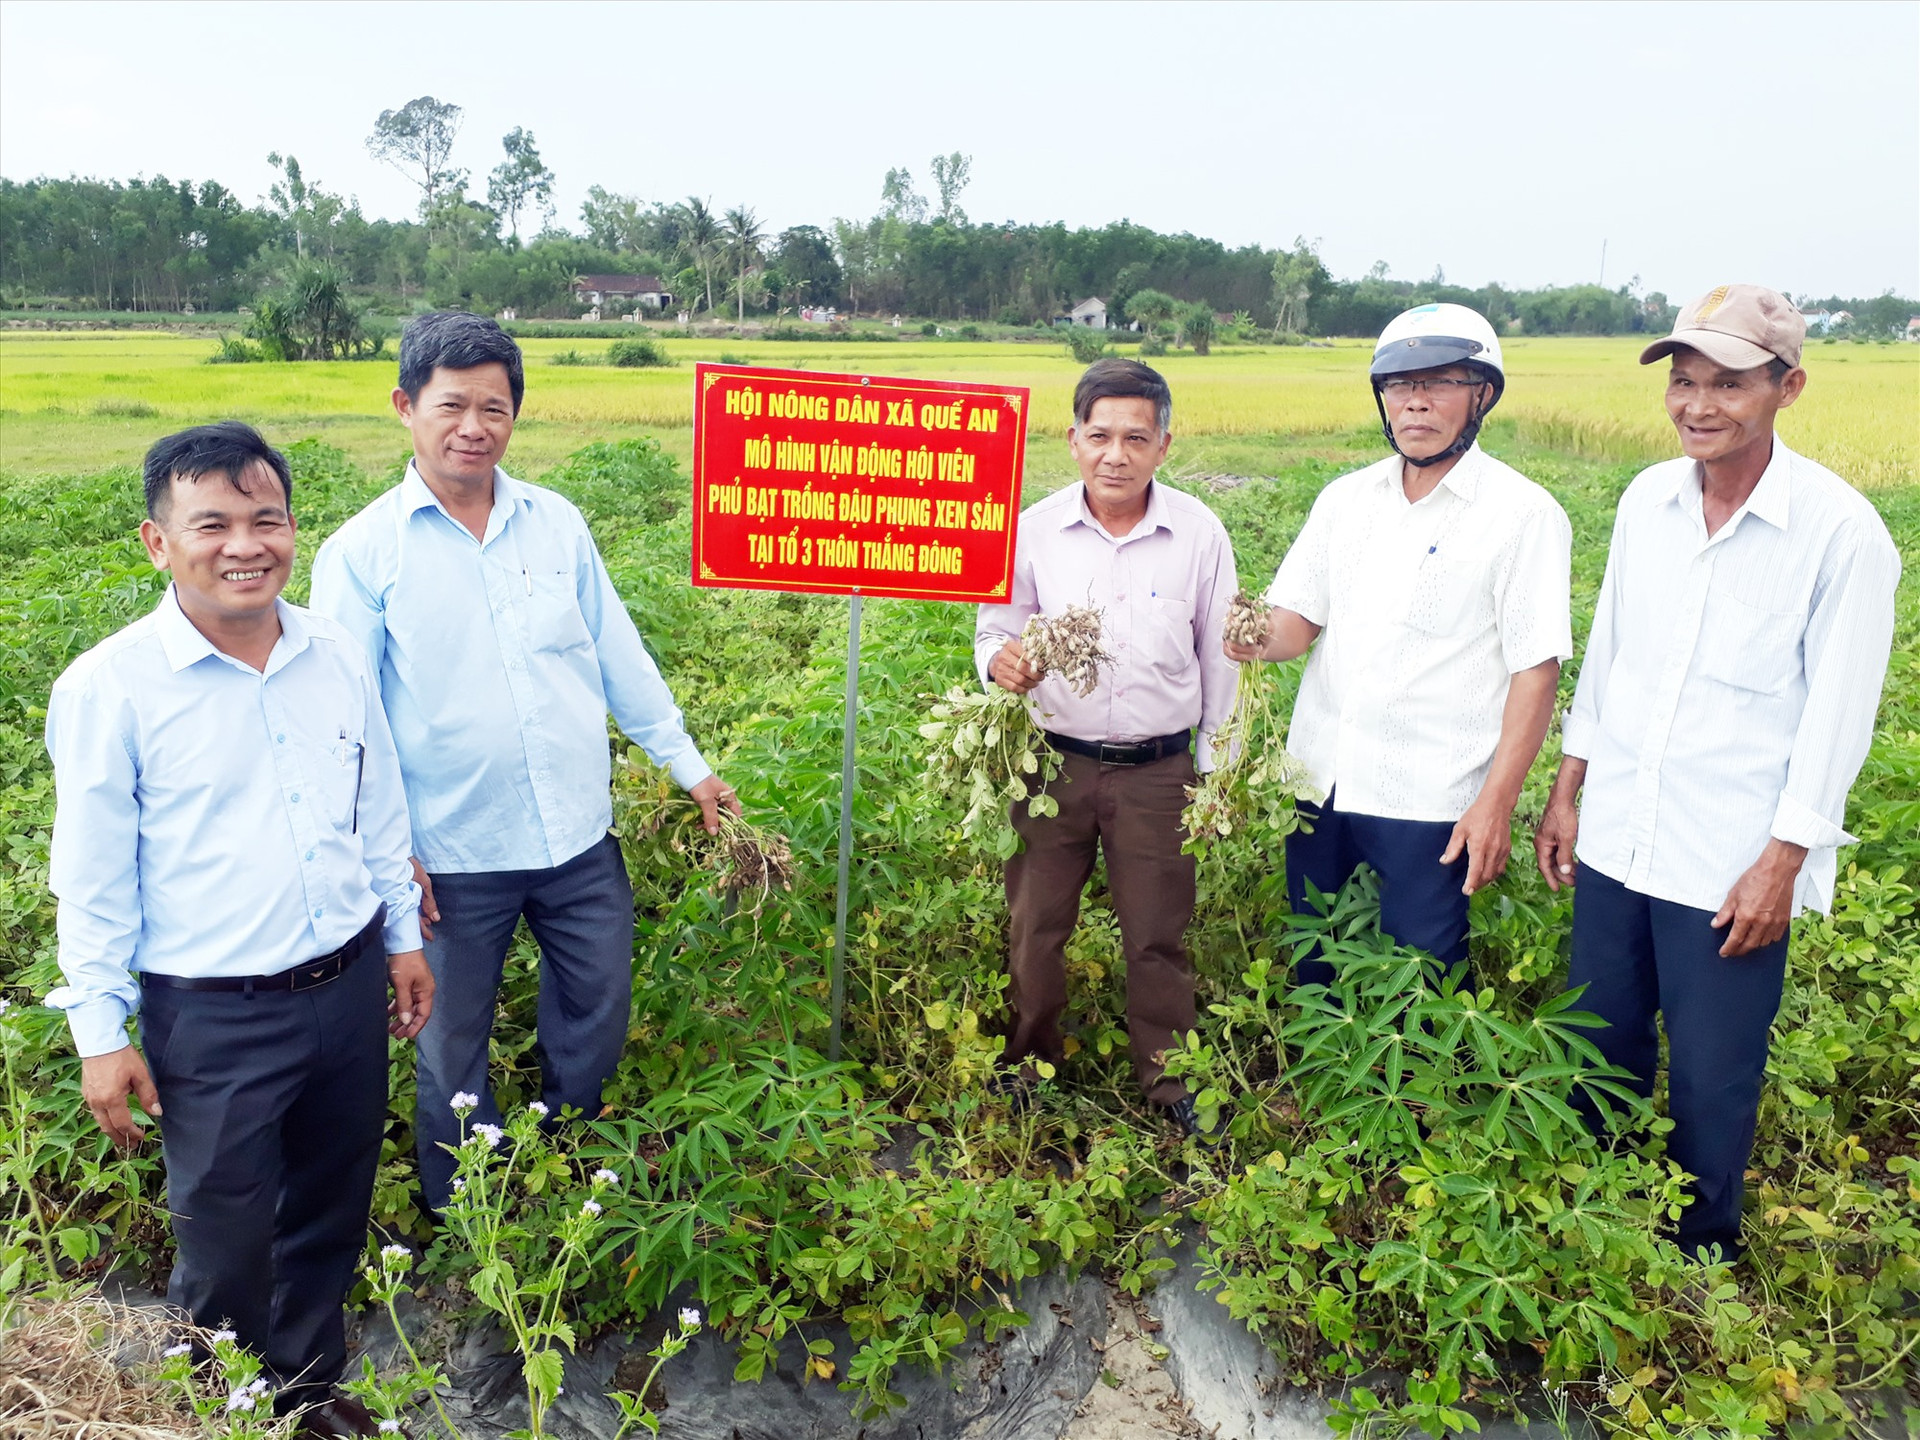 Mô hình trồng đậu phụng phủ bạt ở xã Quế An cho hiệu quả kinh tế cao. Ảnh: T.P